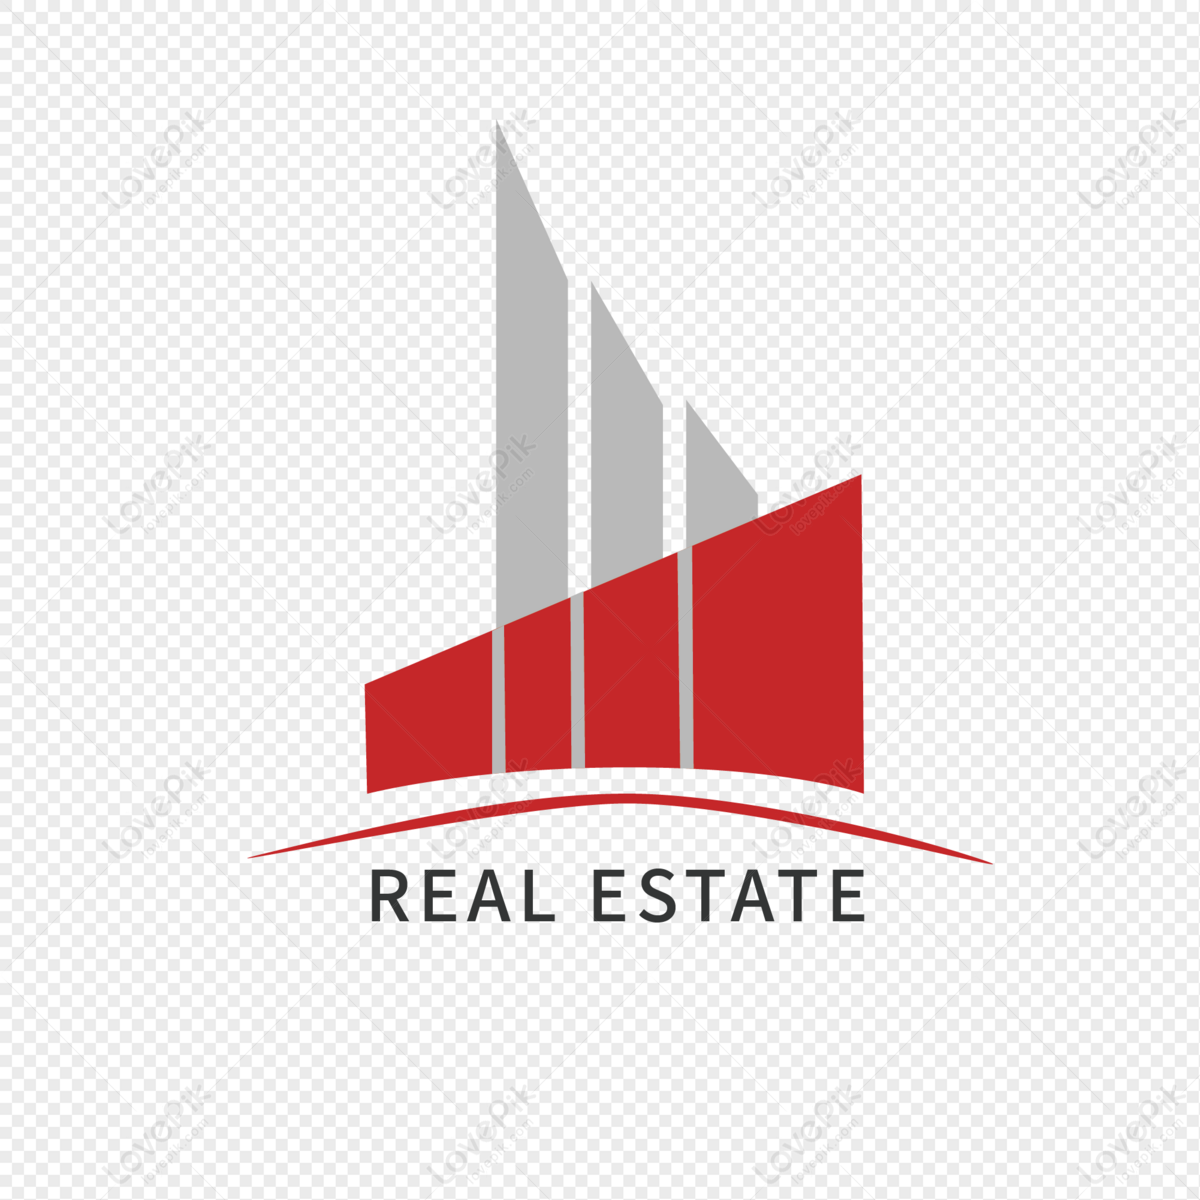 Real estate building logo, building, real estate logo, logo png free download